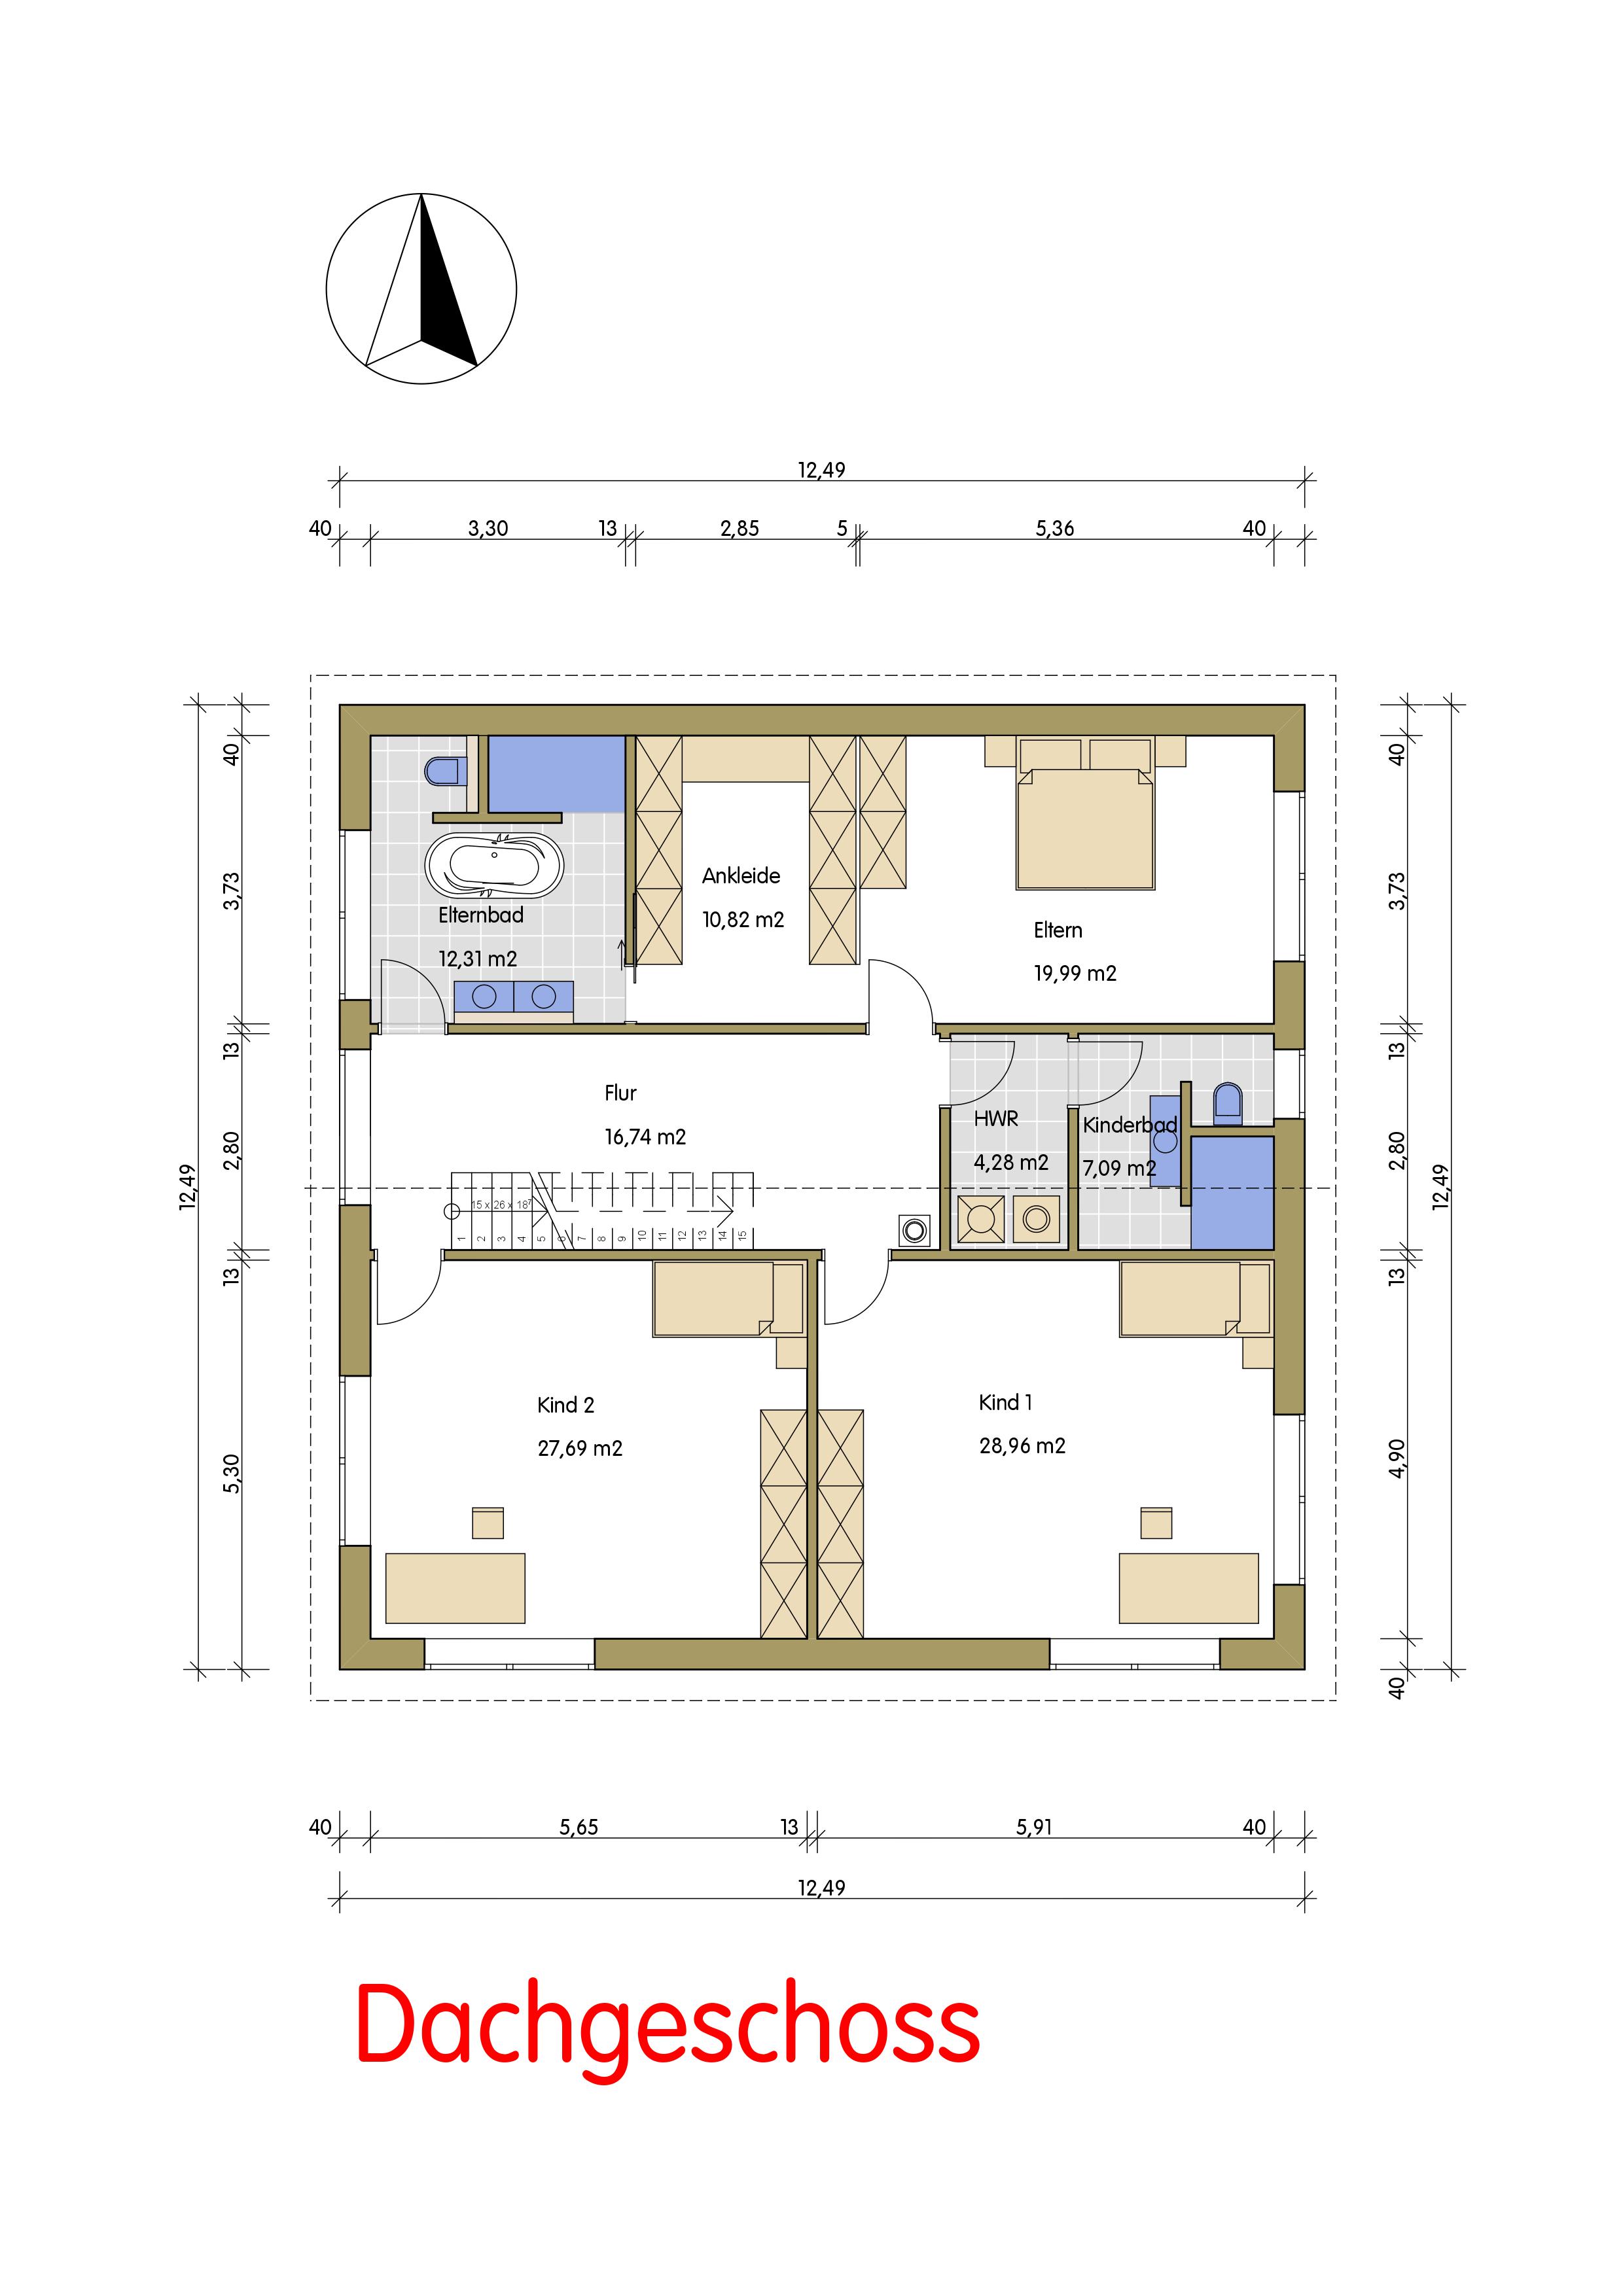 einfamilienhaus-entwurfsplanung-bitte-um-feedback-252878-2.jpg